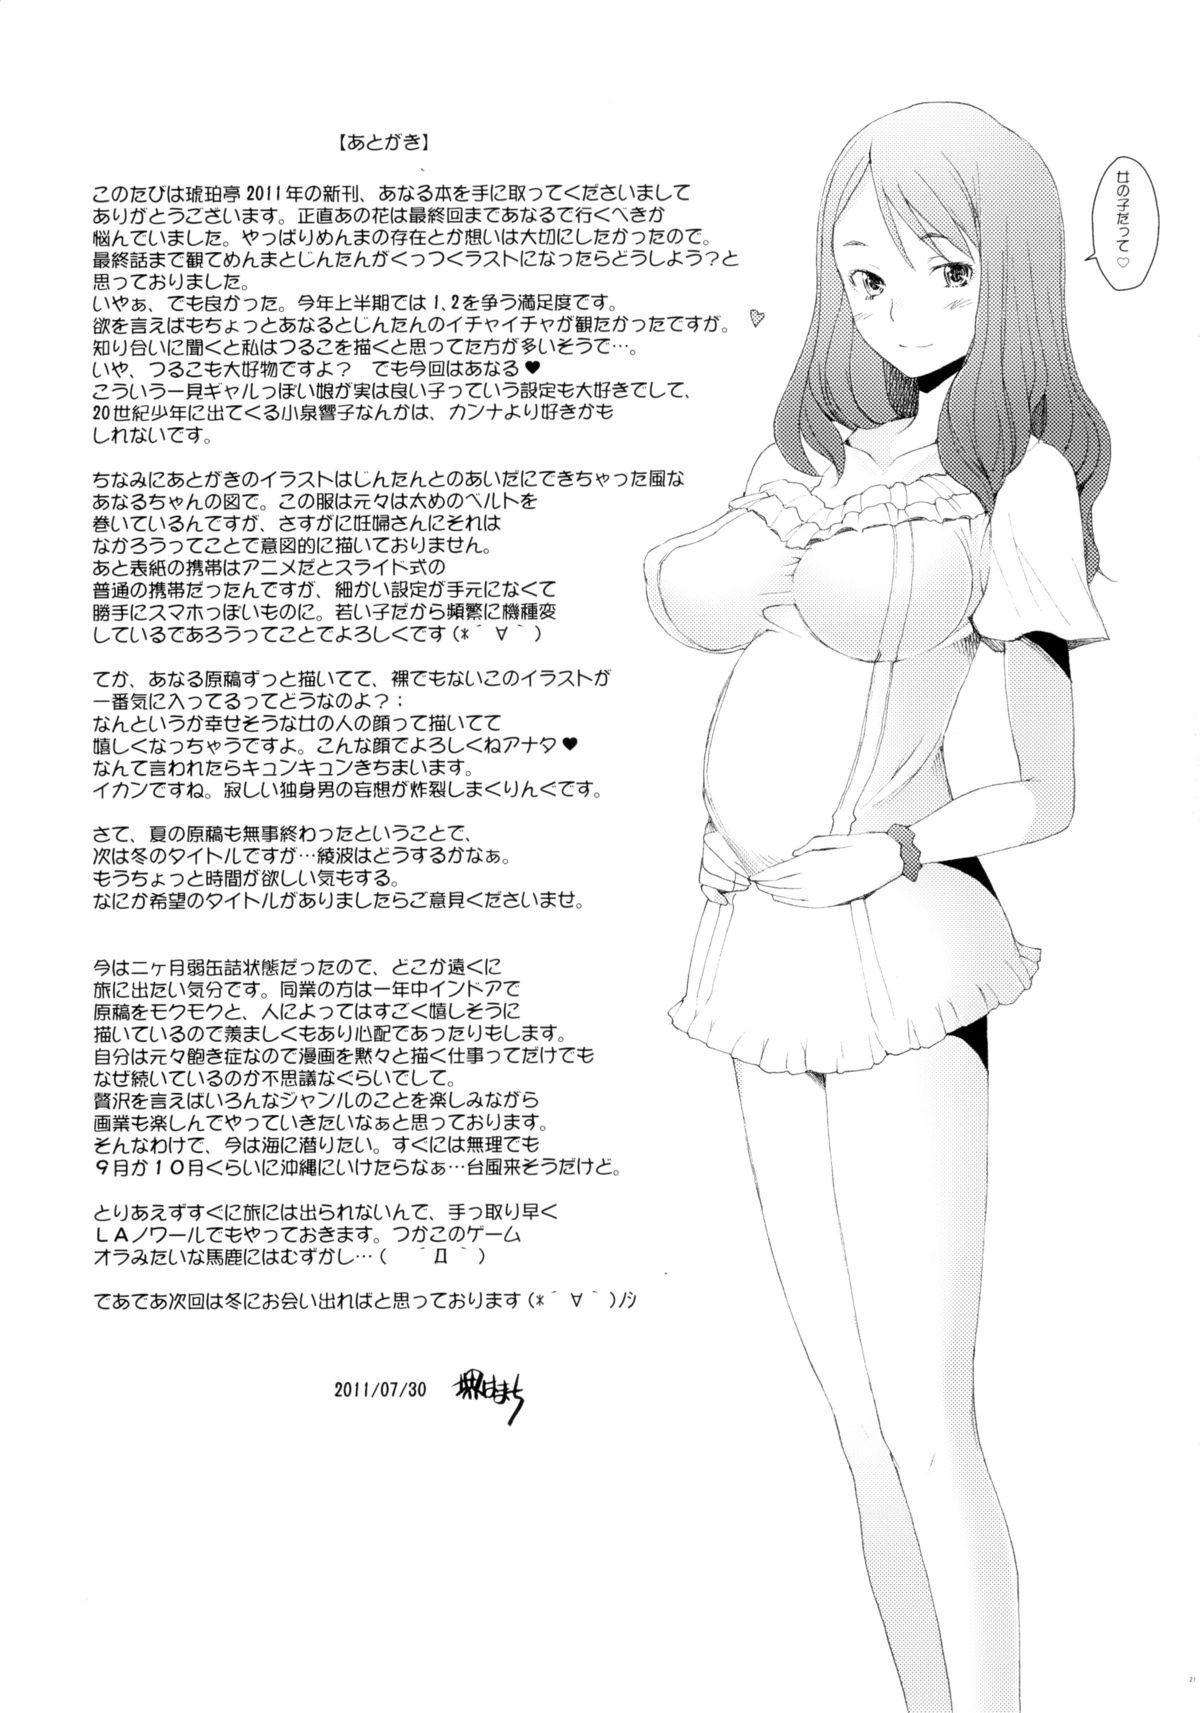 Suckingcock Ano Hi Mita Hana no Namae wo Bokutachi wa Keshite Wasurenai - Ano hi mita hana no namae wo bokutachi wa mada shiranai Exhibition - Page 26